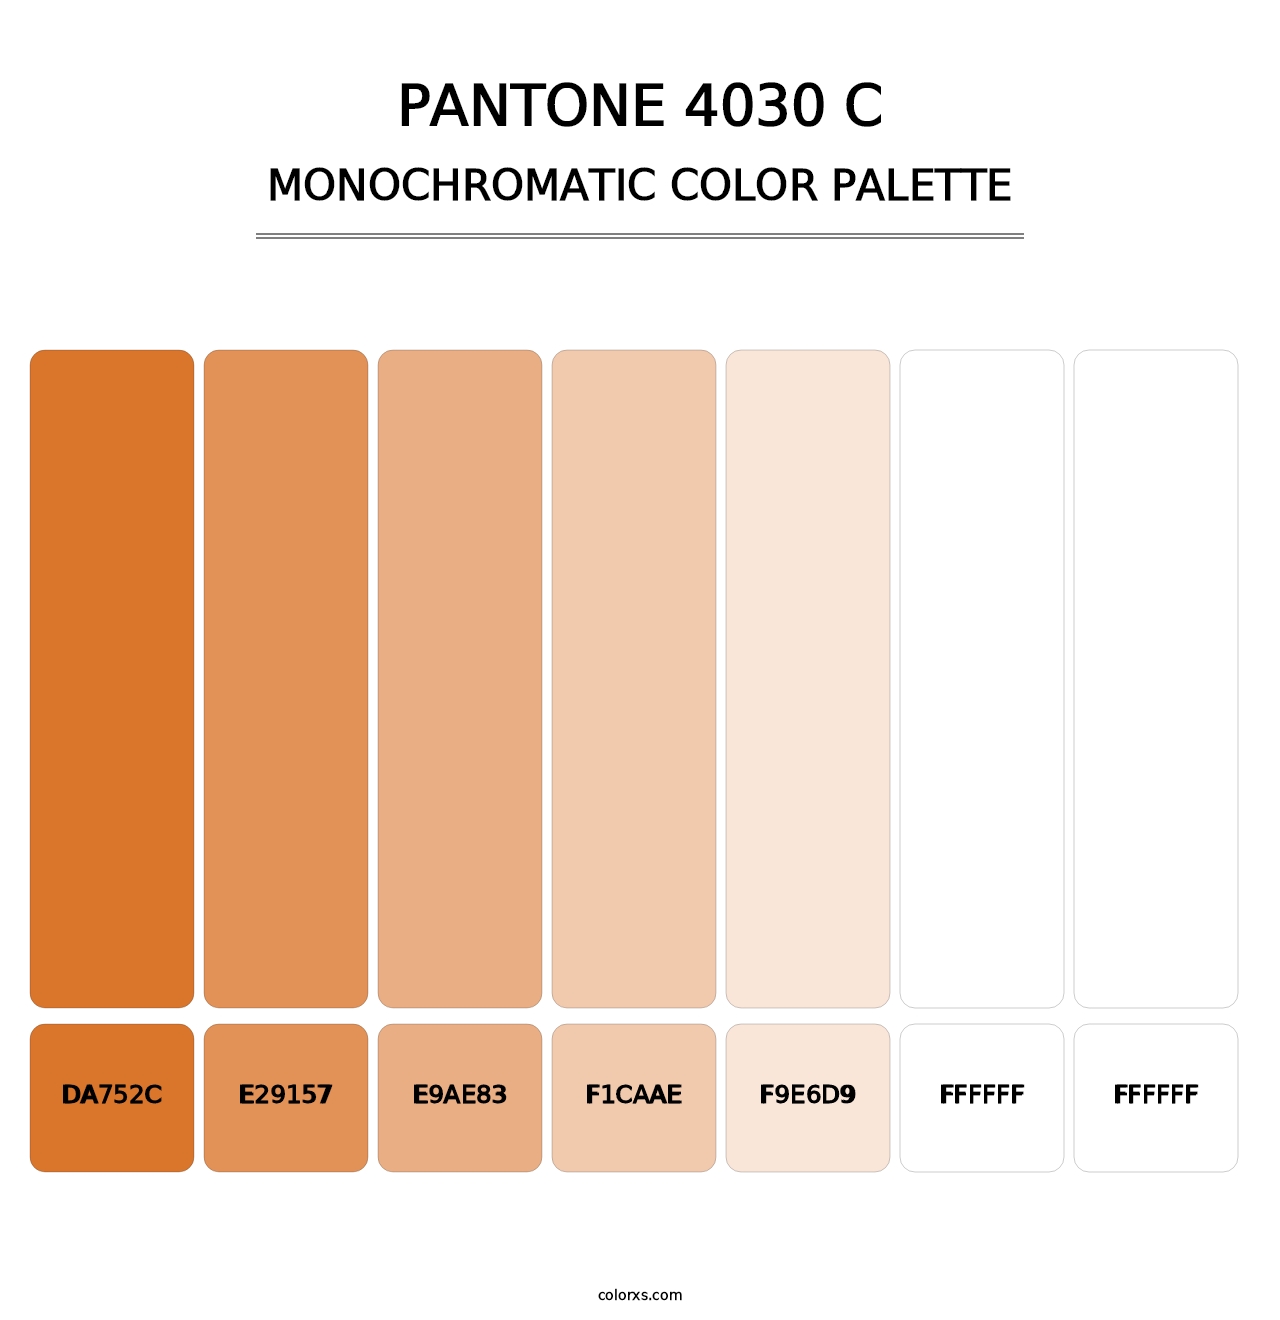 PANTONE 4030 C - Monochromatic Color Palette